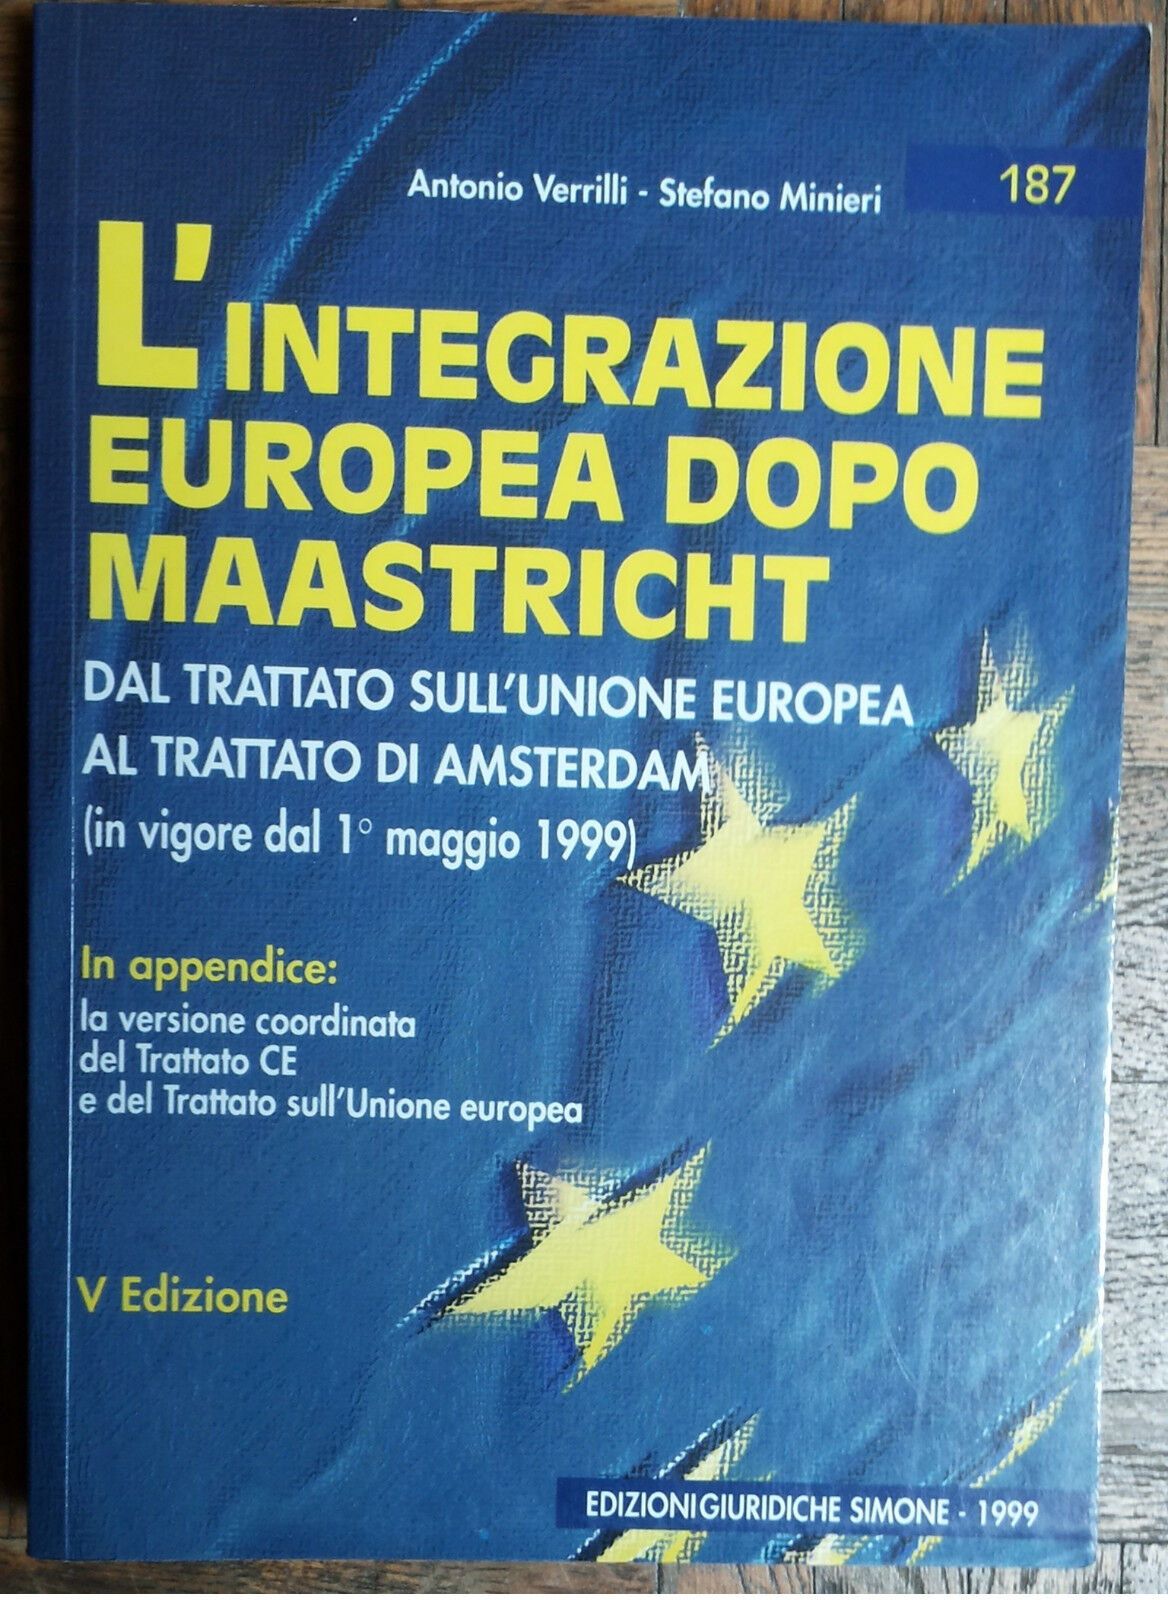 L'integrazione europea dopo Maastricht - Verrilli, Minieri - Simone,1999 - R